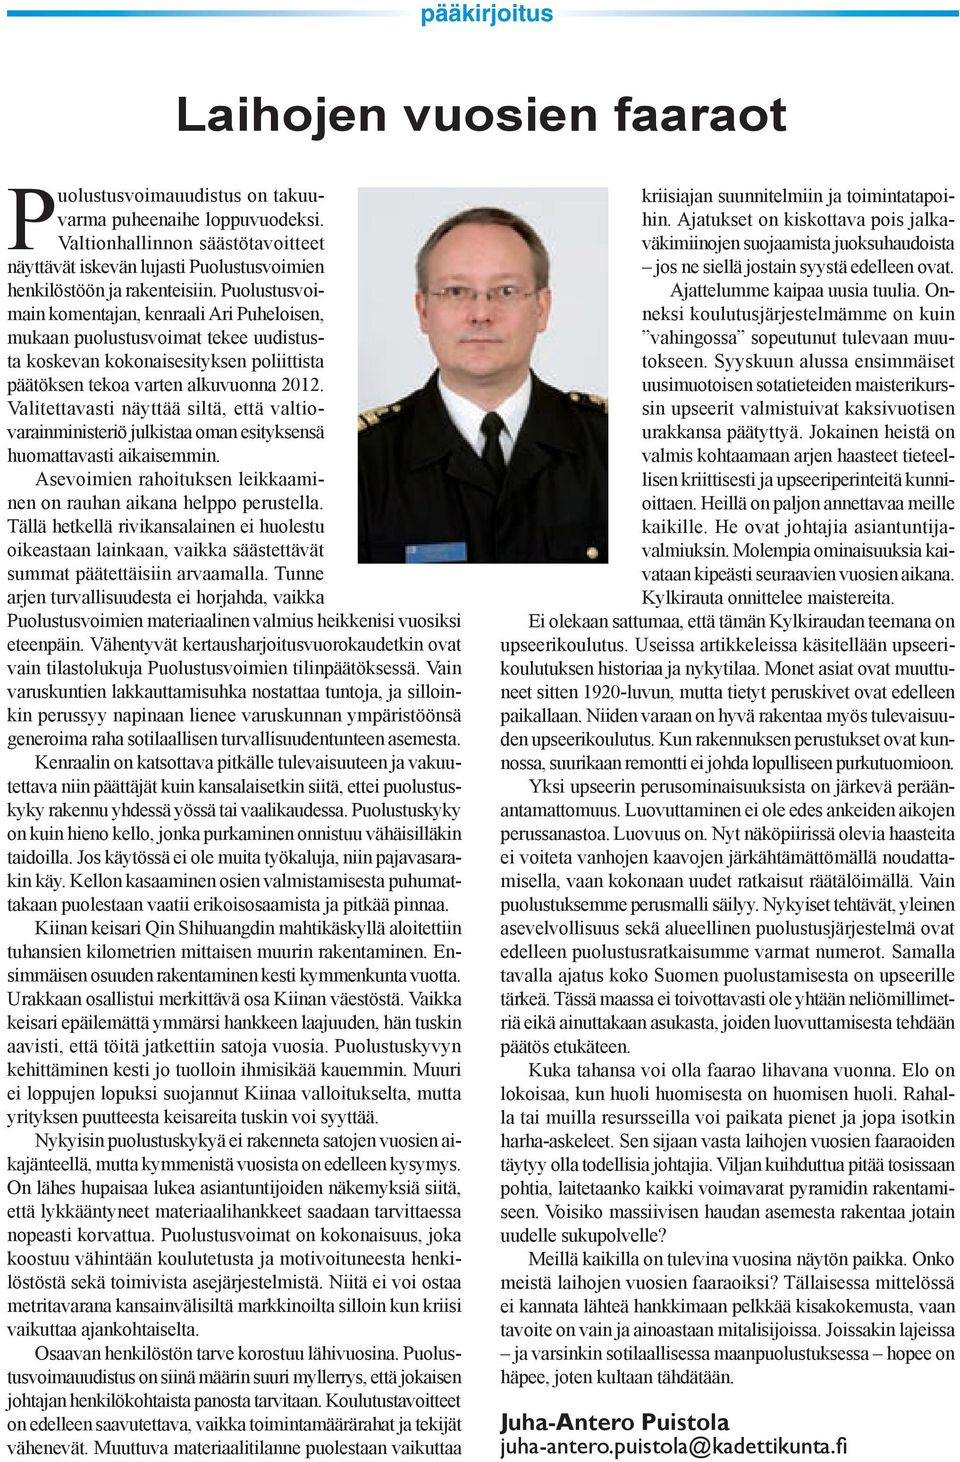 Puolustusvoimain komentajan, kenraali Ari Puheloisen, mukaan puolustusvoimat tekee uudistusta koskevan kokonaisesityksen poliittista päätöksen tekoa varten alkuvuonna 2012.